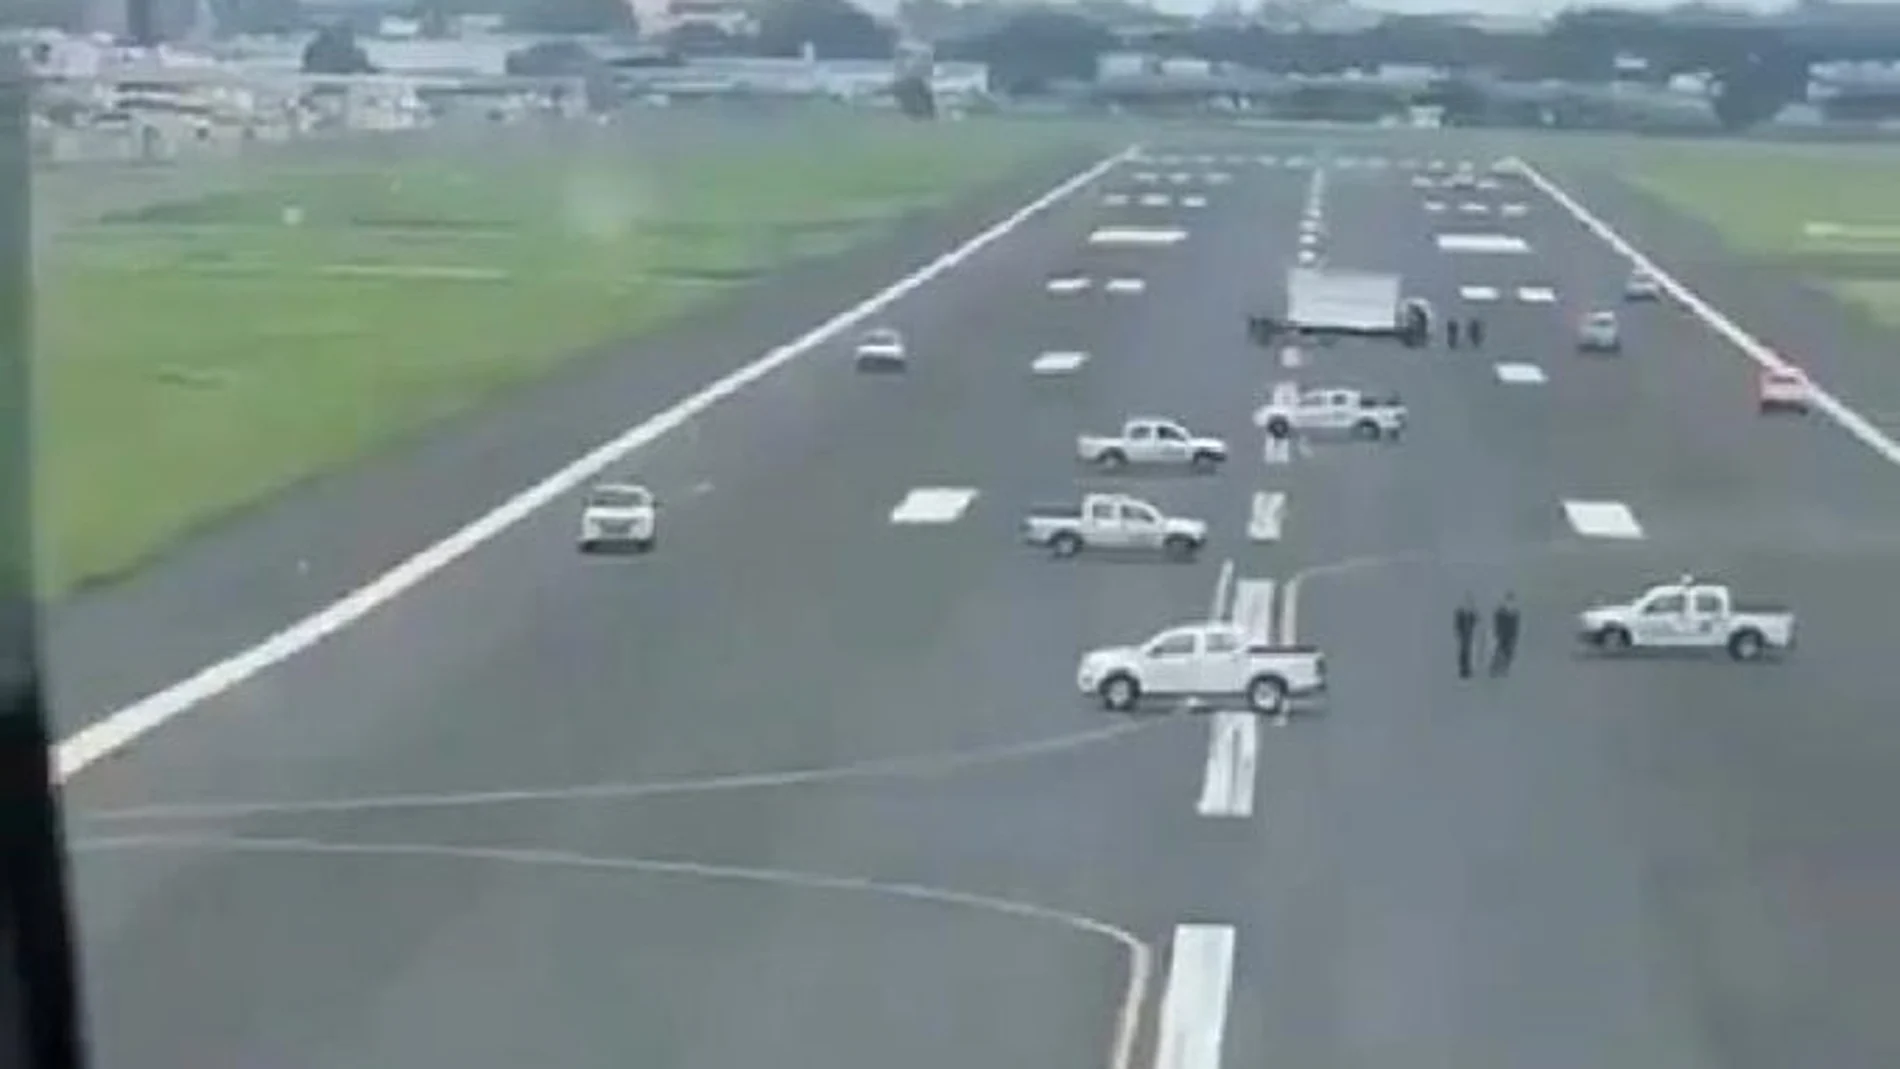 Ordenó colocar vehículos en la pista para que el avión no pudiera aterrizar. fue desviado a Quito, donde tocó tierra sin problema.